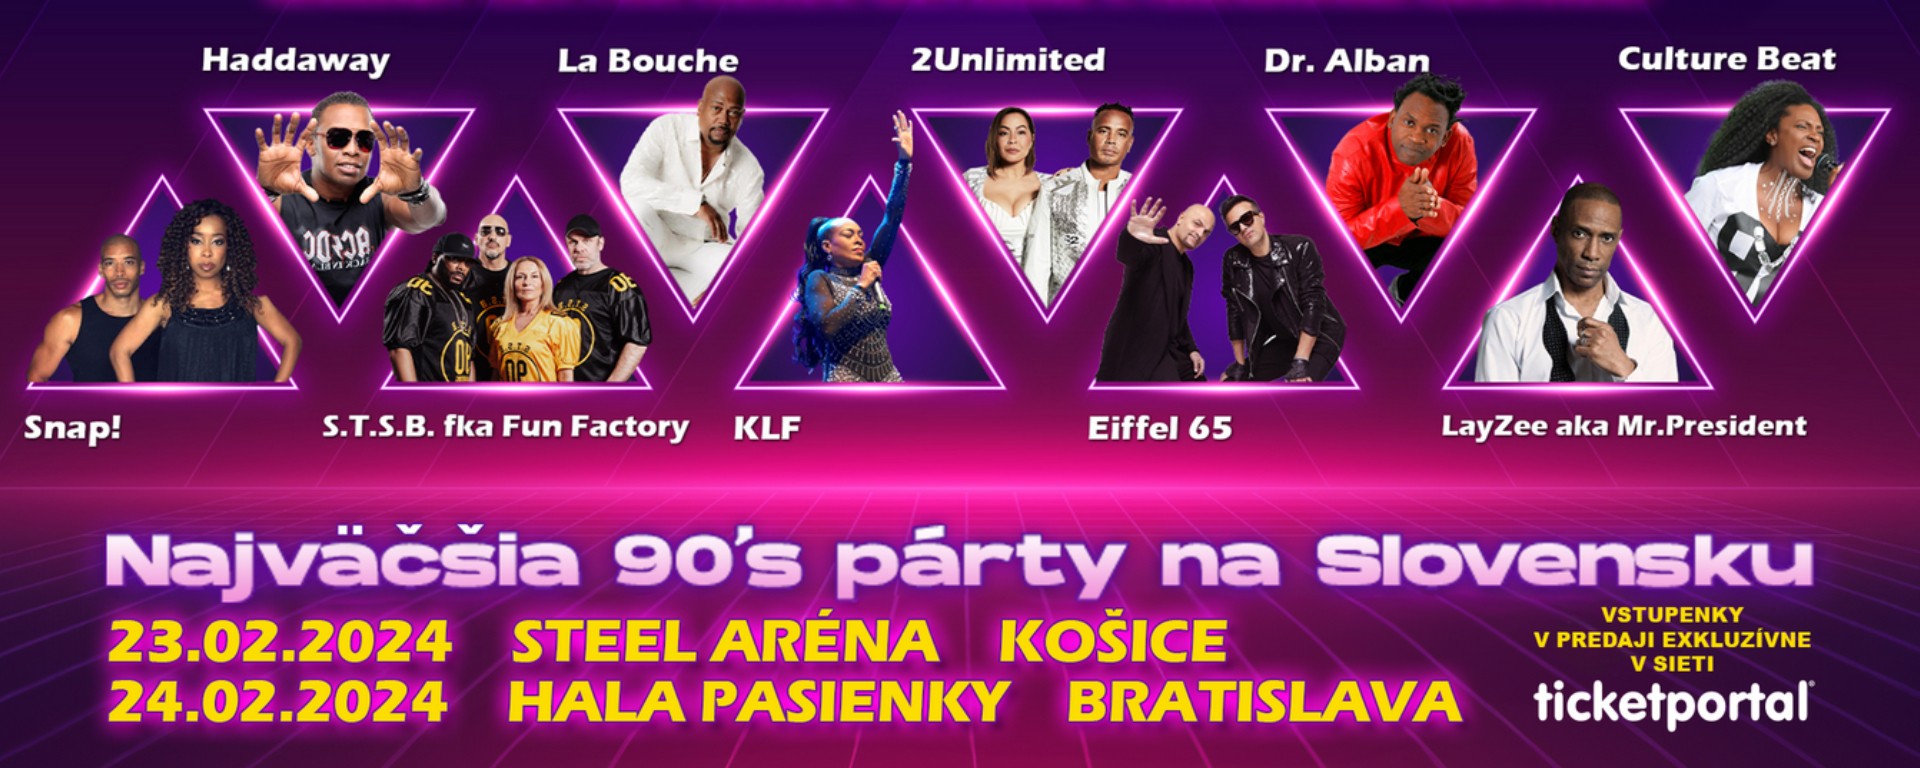 Cez víkend zasiahne Slovensko horúčka 90-tych rokov, pozrite si lineup koncertov v Košiciach a v Bratislave!